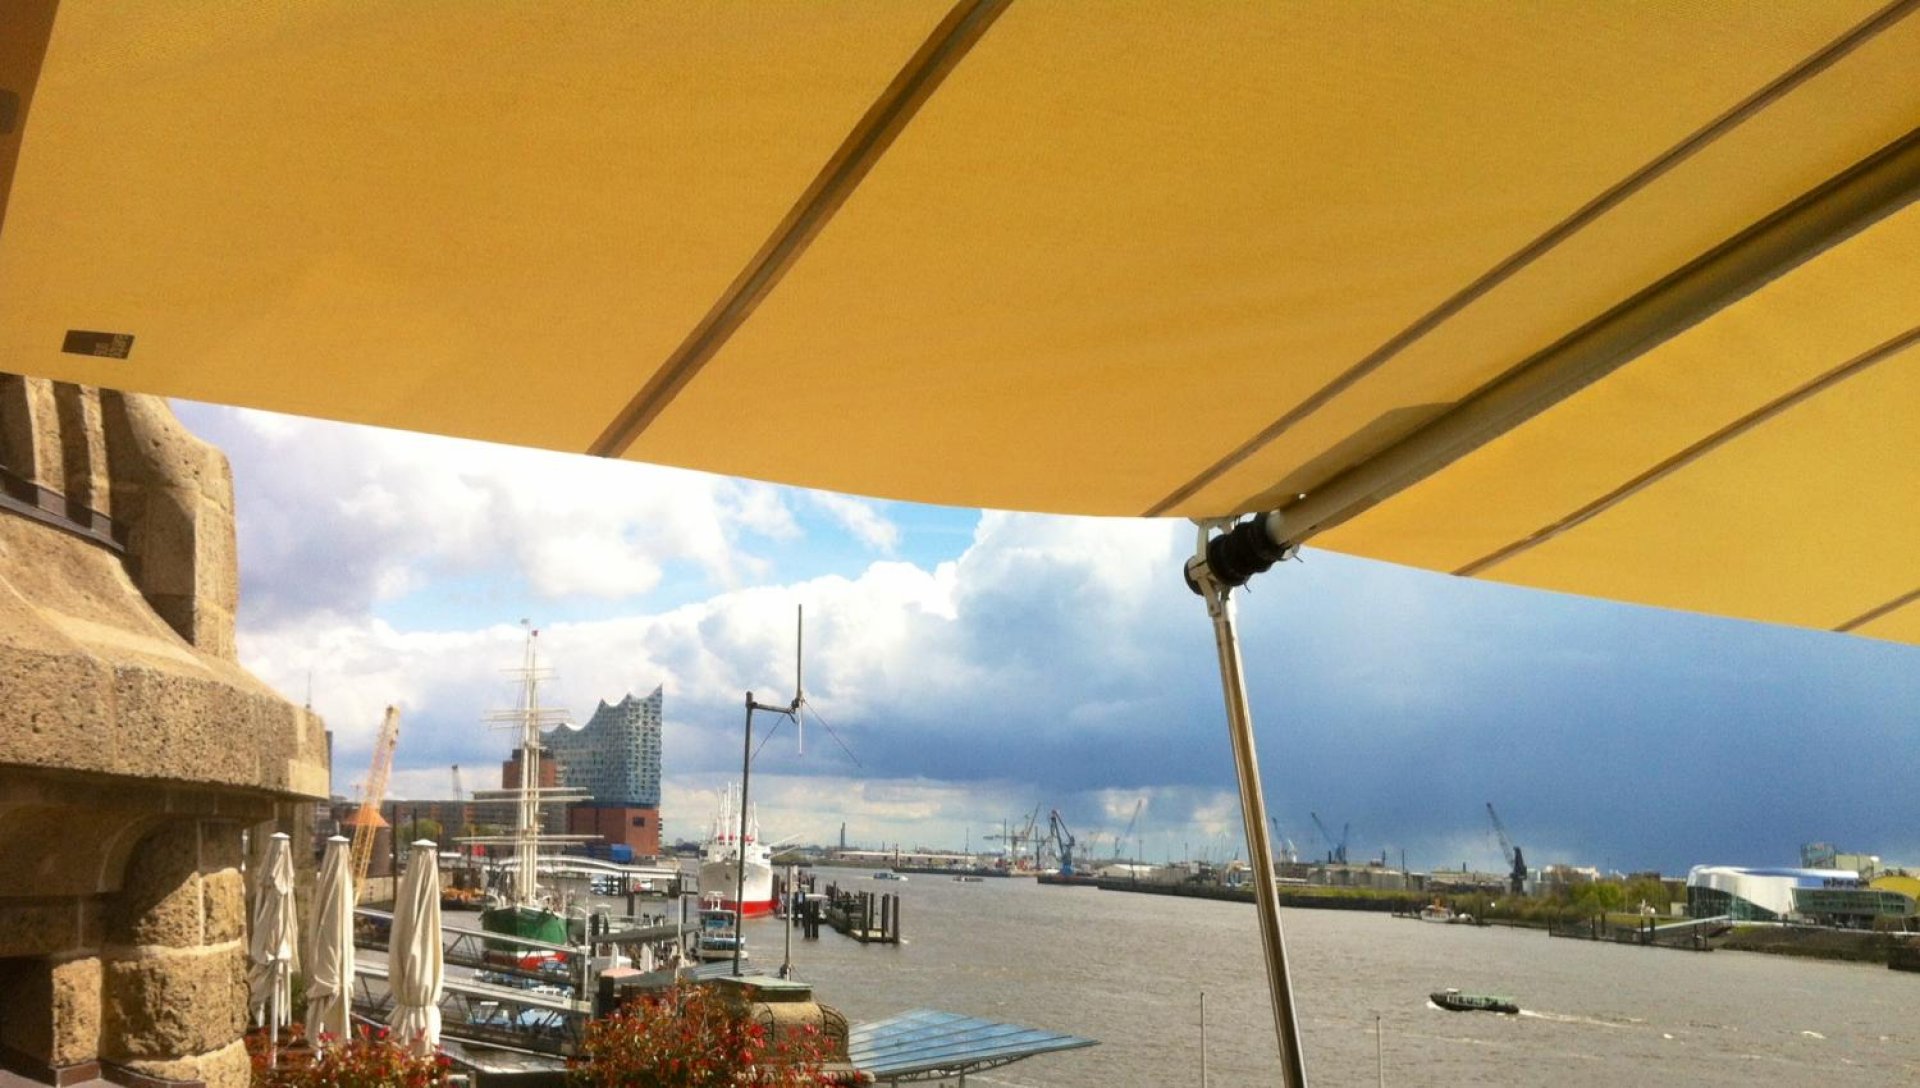 Der Hafen-Klub in Hamburg wird von einem original SunSquare Sonnensegel beschatt